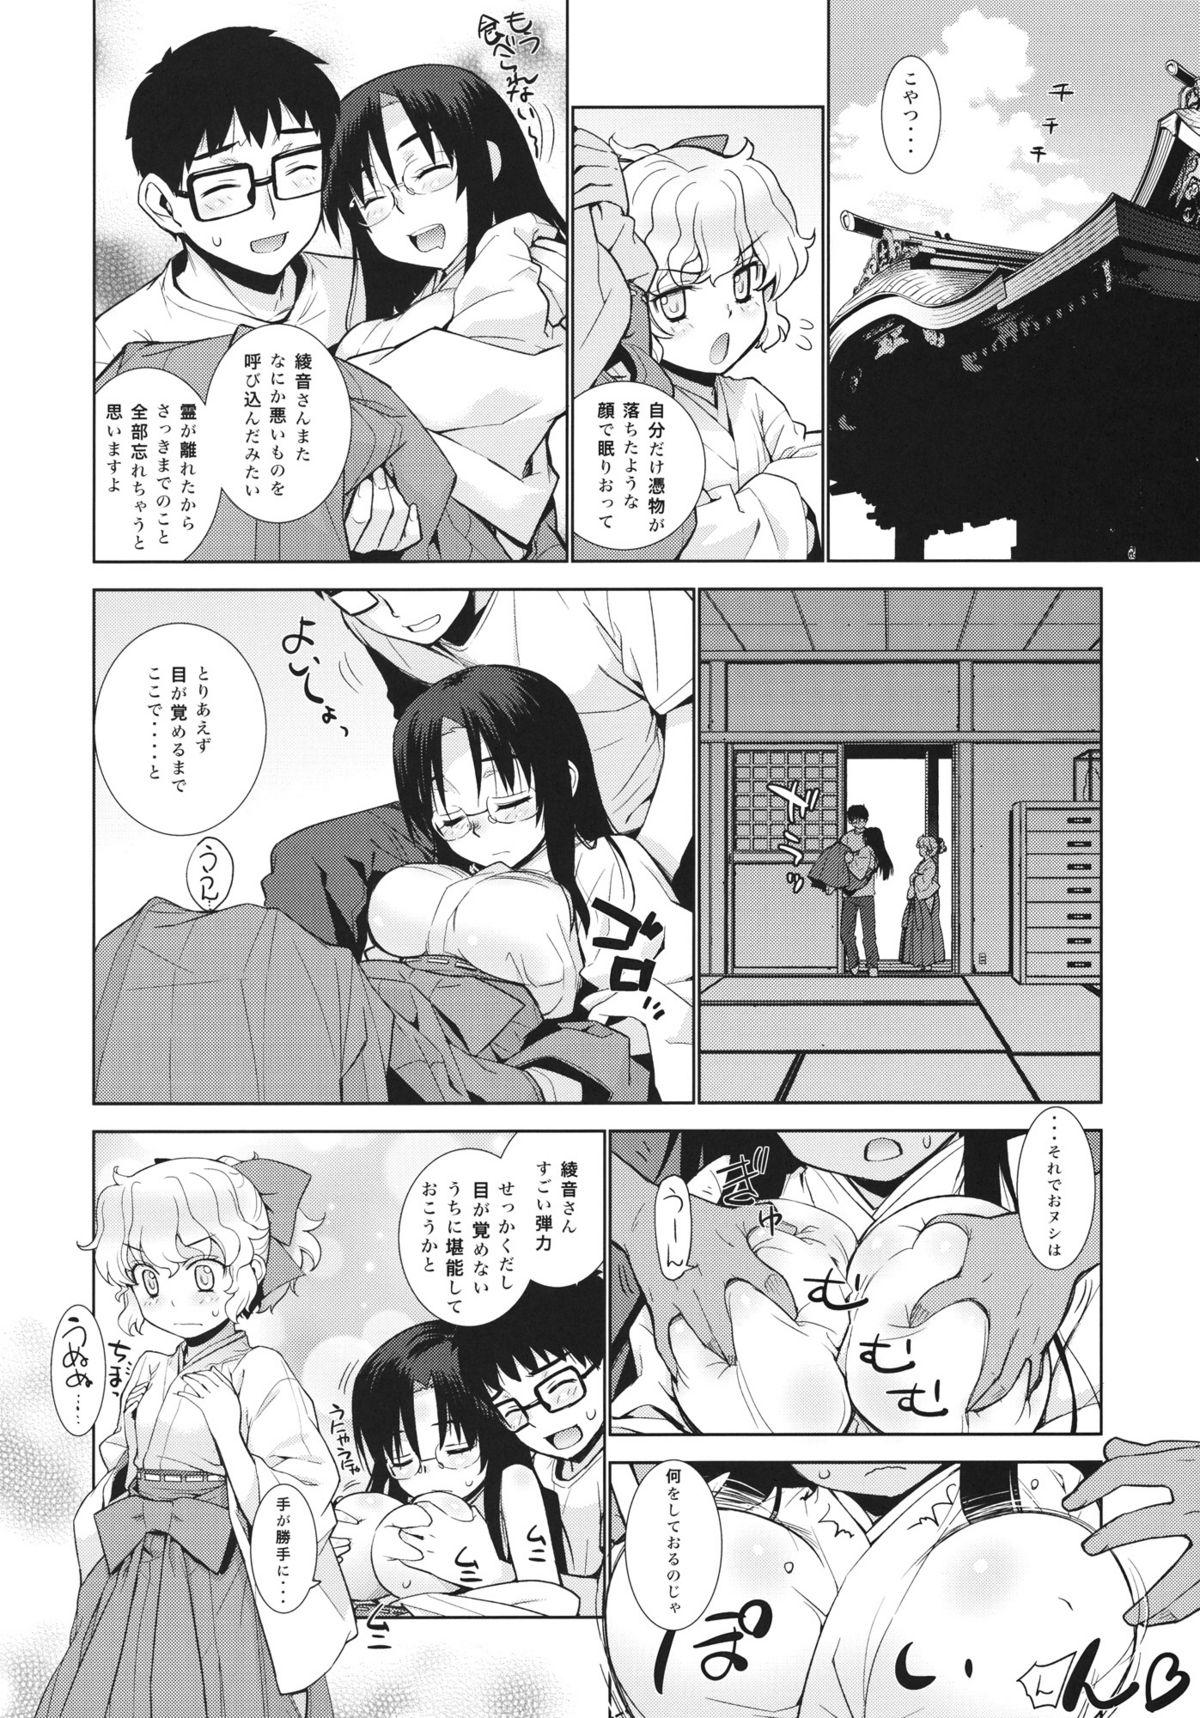 Soloboy Kanara-sama no Nichijou Nana - Tonari no miko-san wa minna warau Tittyfuck - Page 6